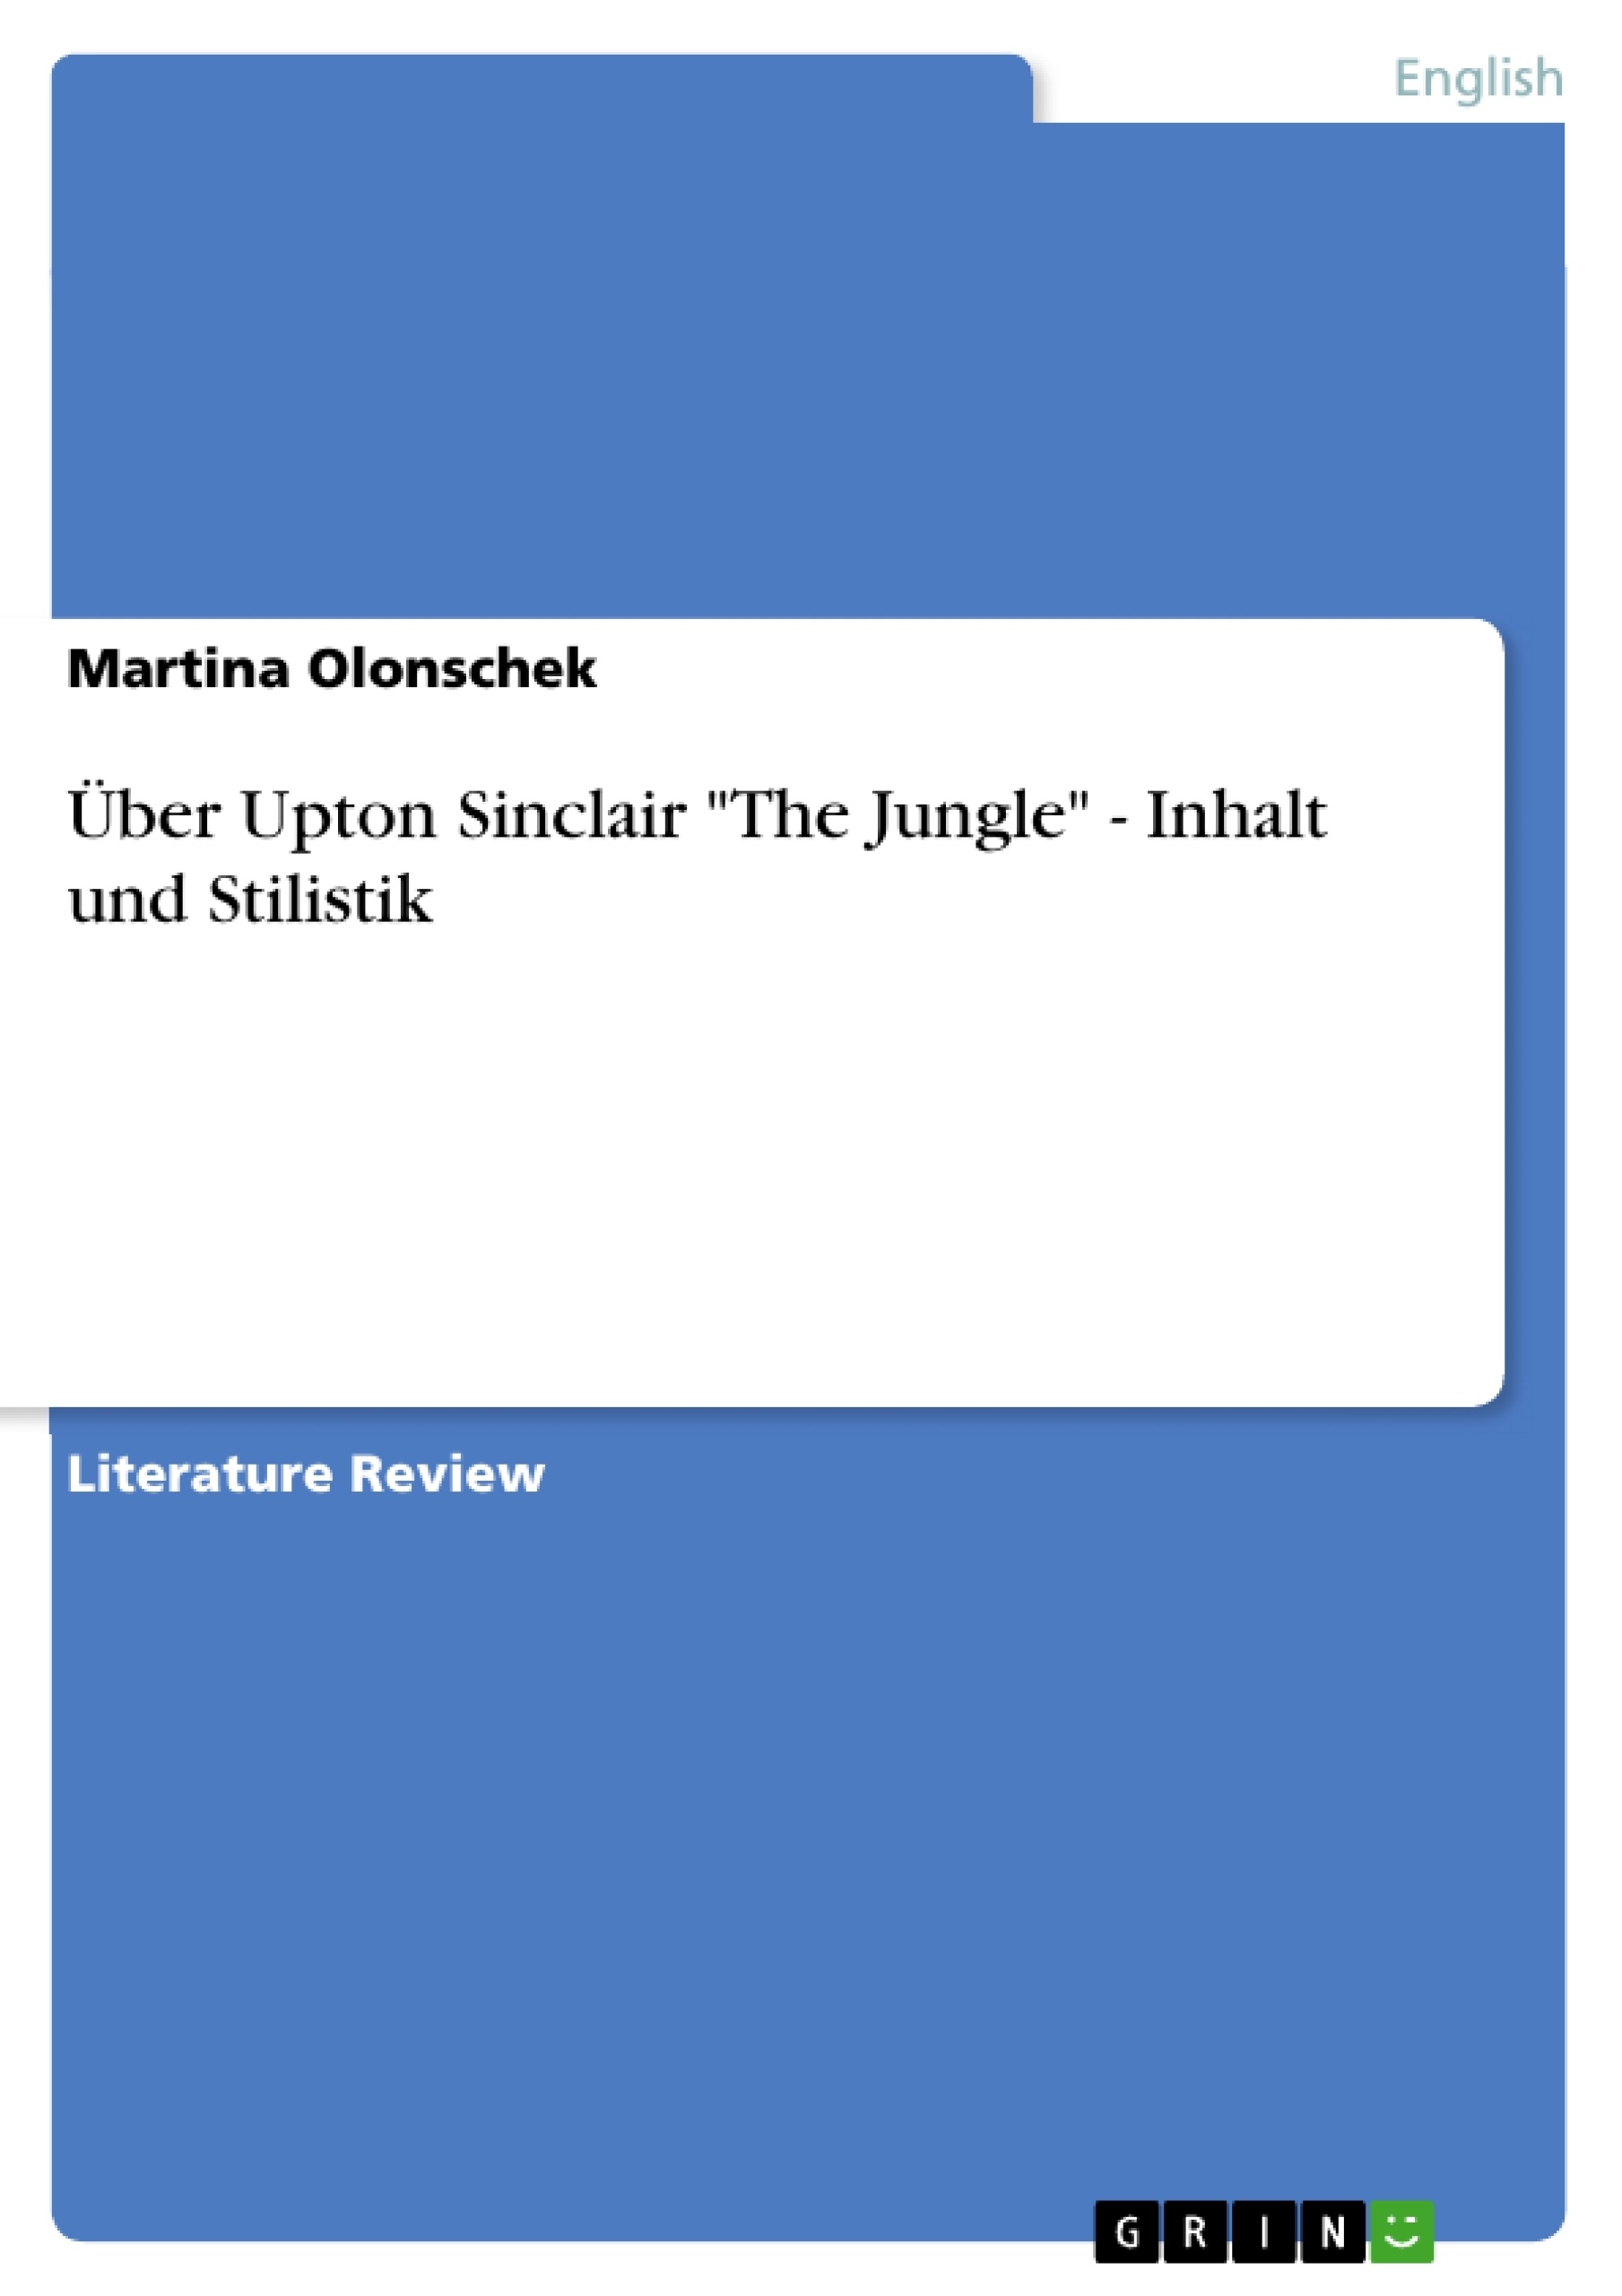 Title: Über Upton Sinclair "The Jungle" - Inhalt und Stilistik